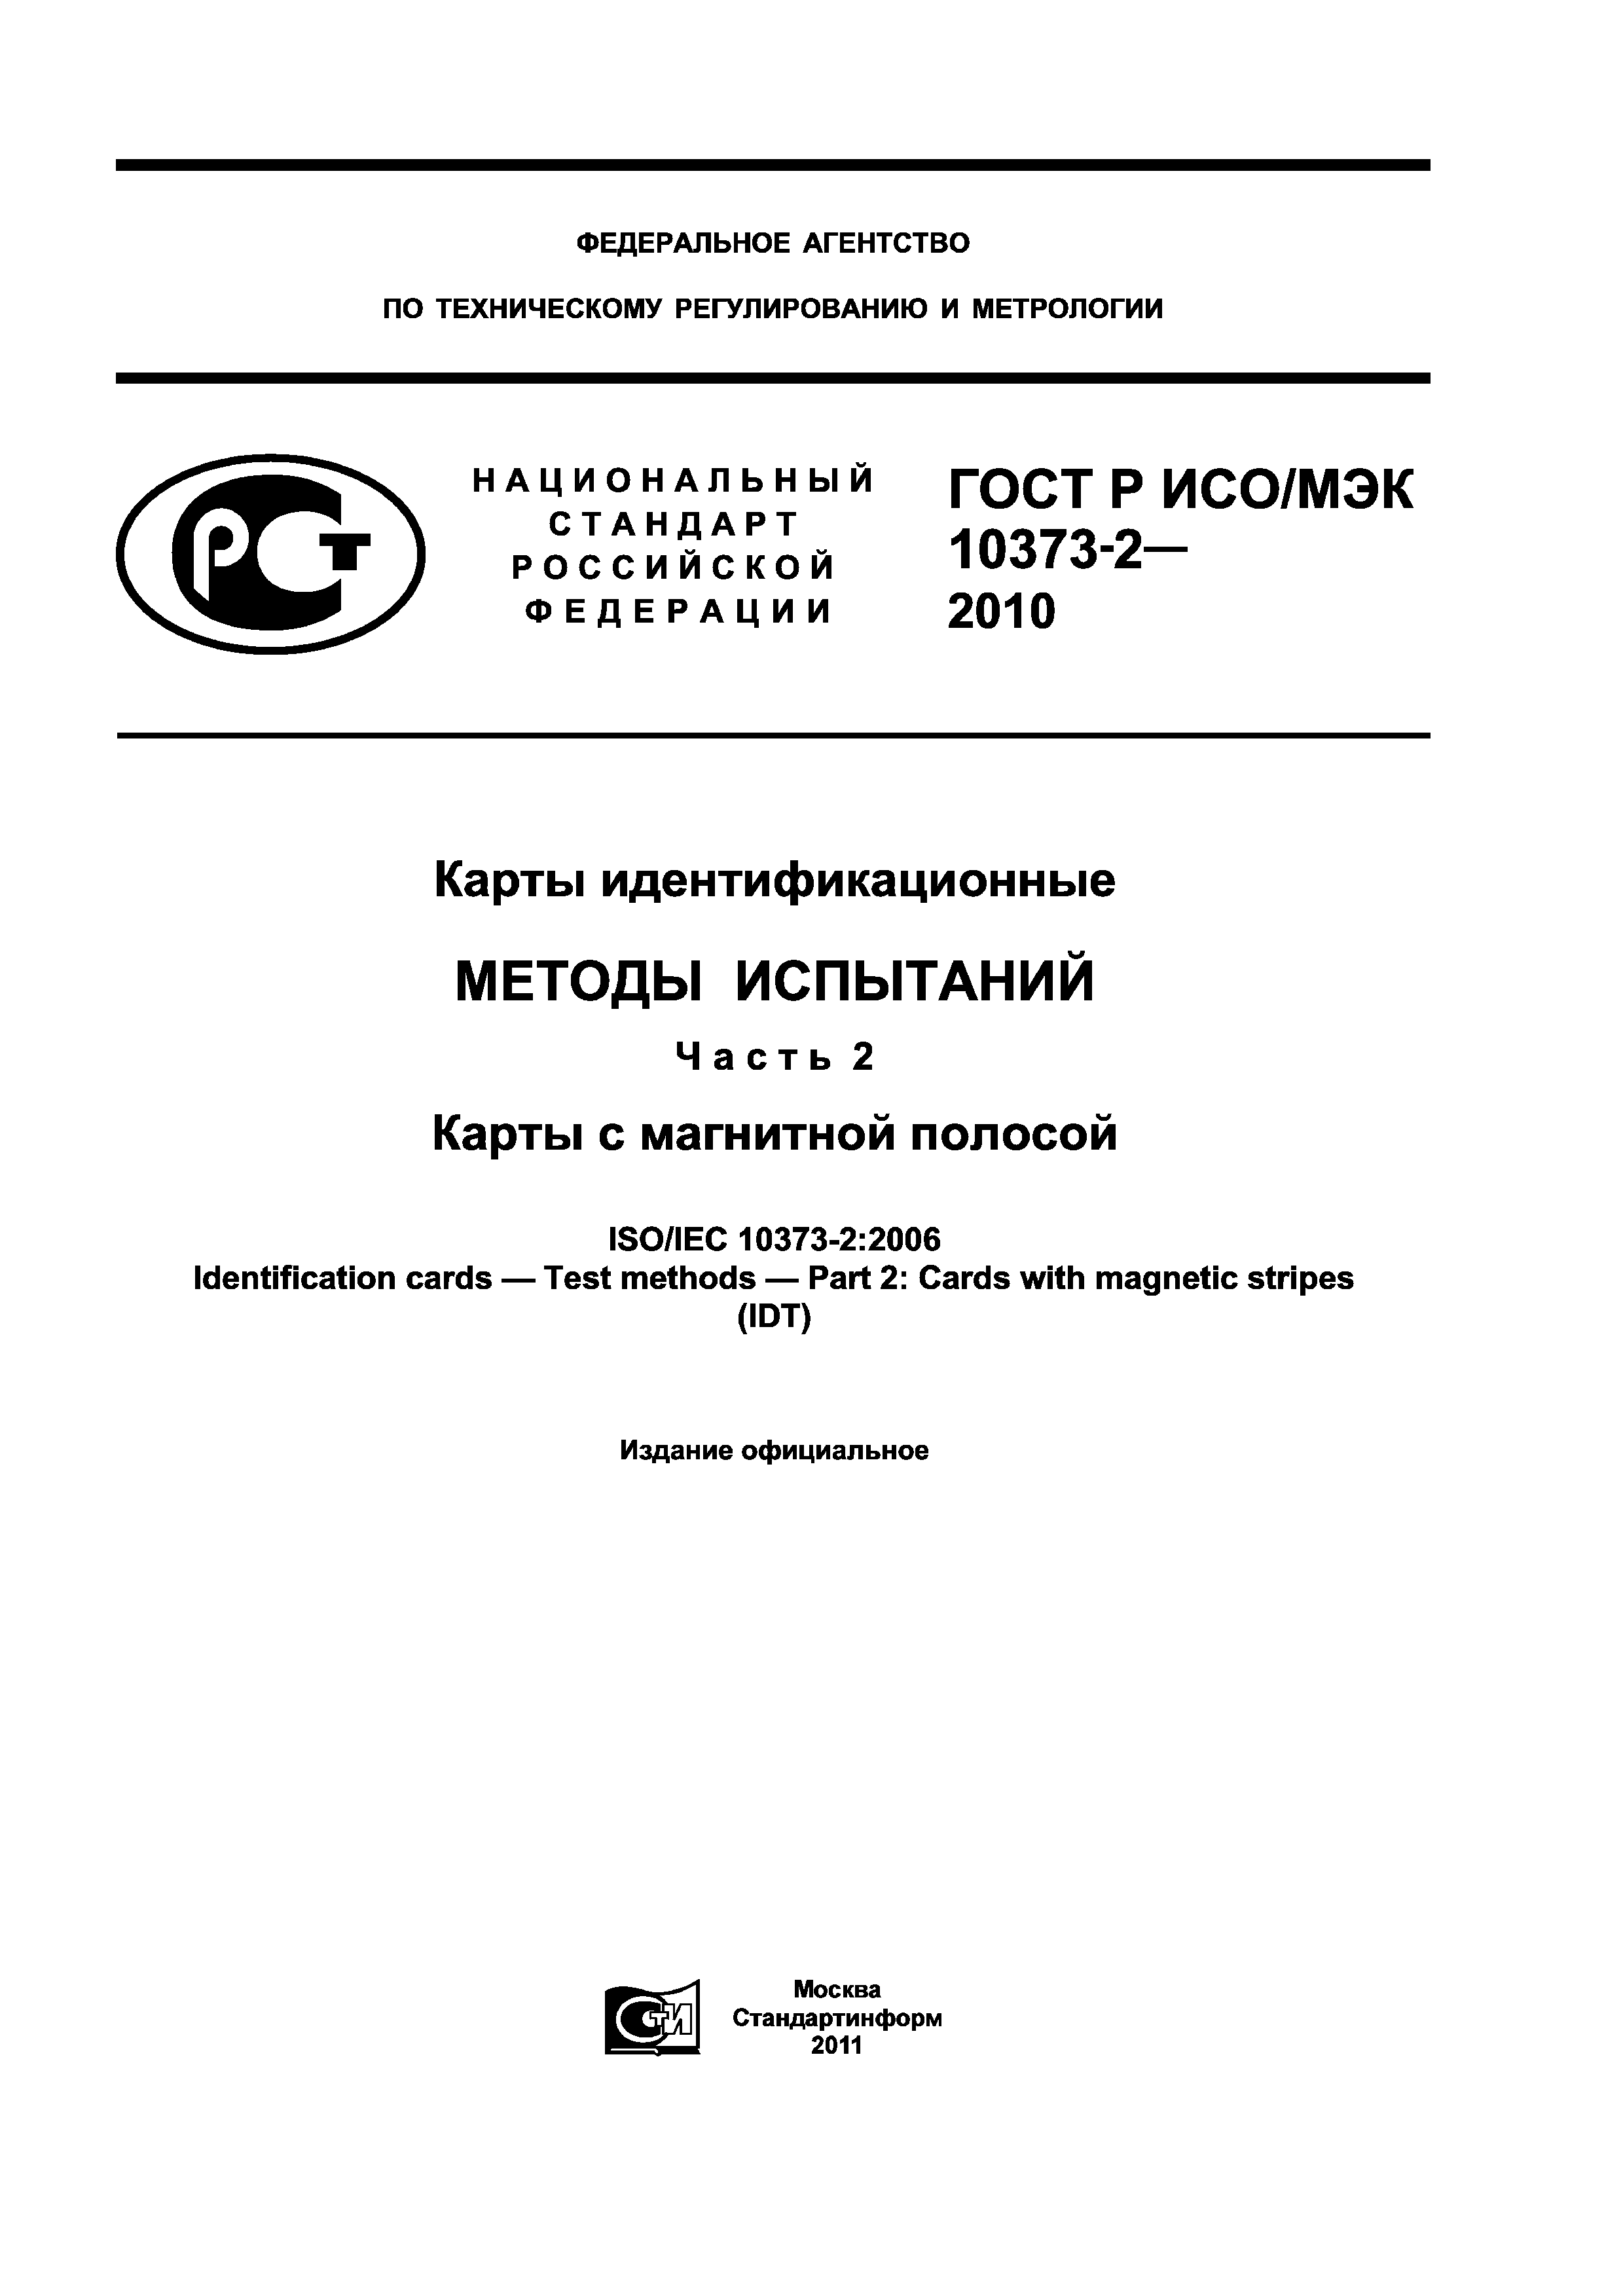 ГОСТ Р ИСО/МЭК 10373-2-2010